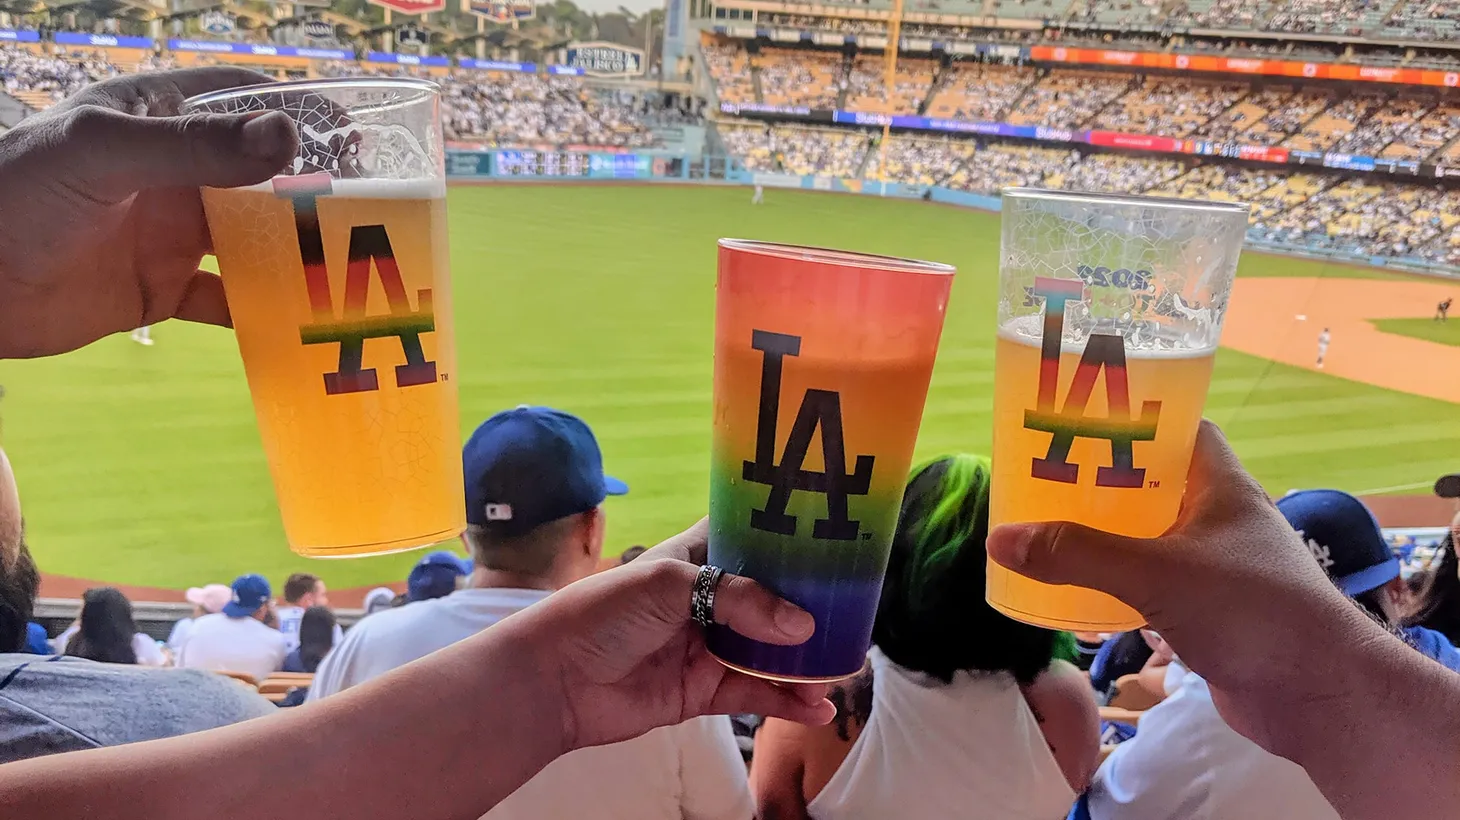 Giants, Dodgers both wear Pride hats on field